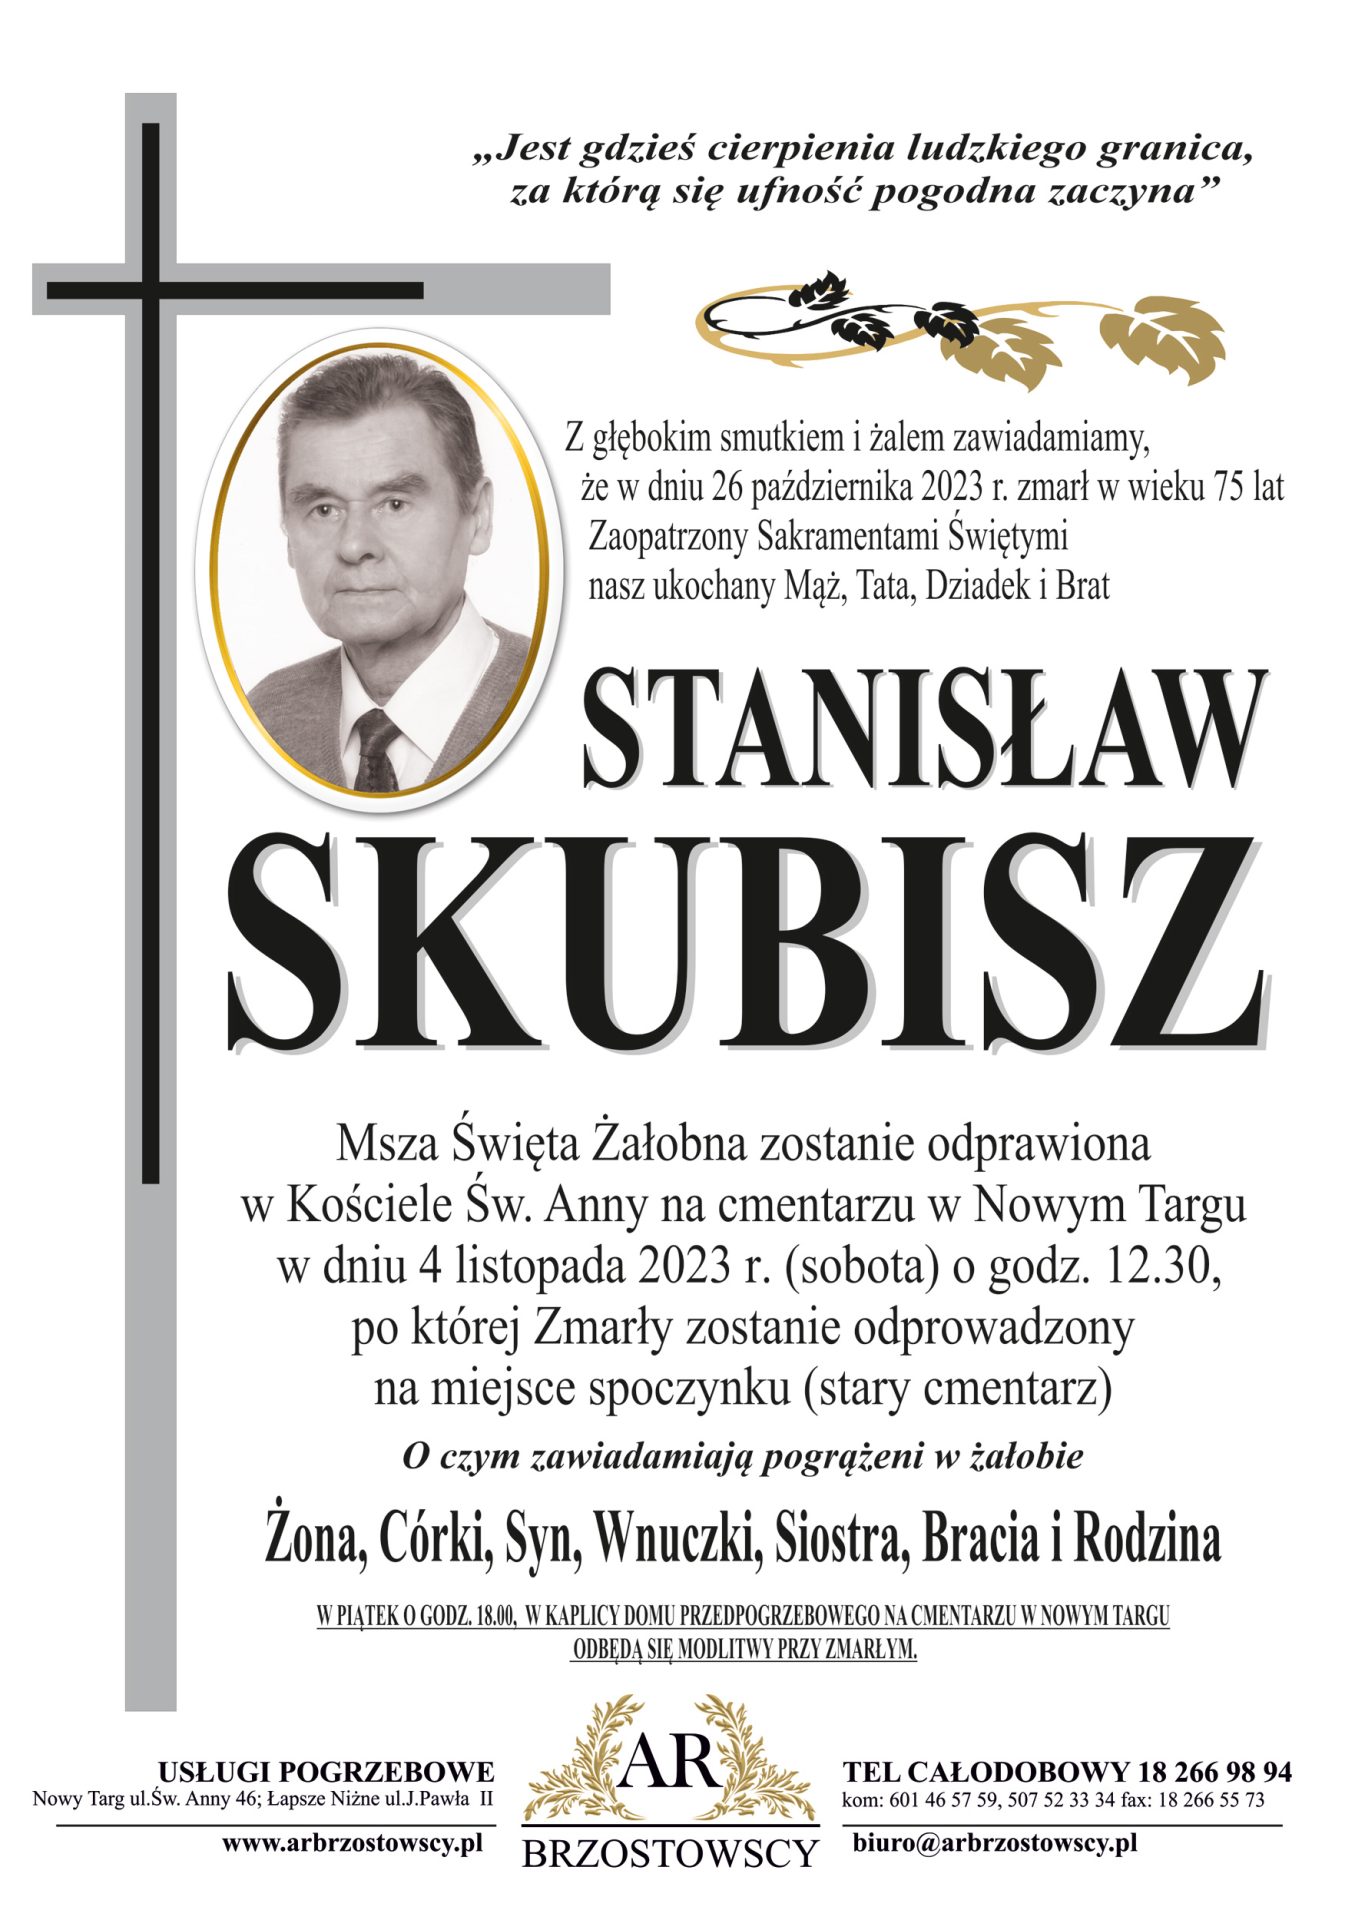 Stanisław Skubisz